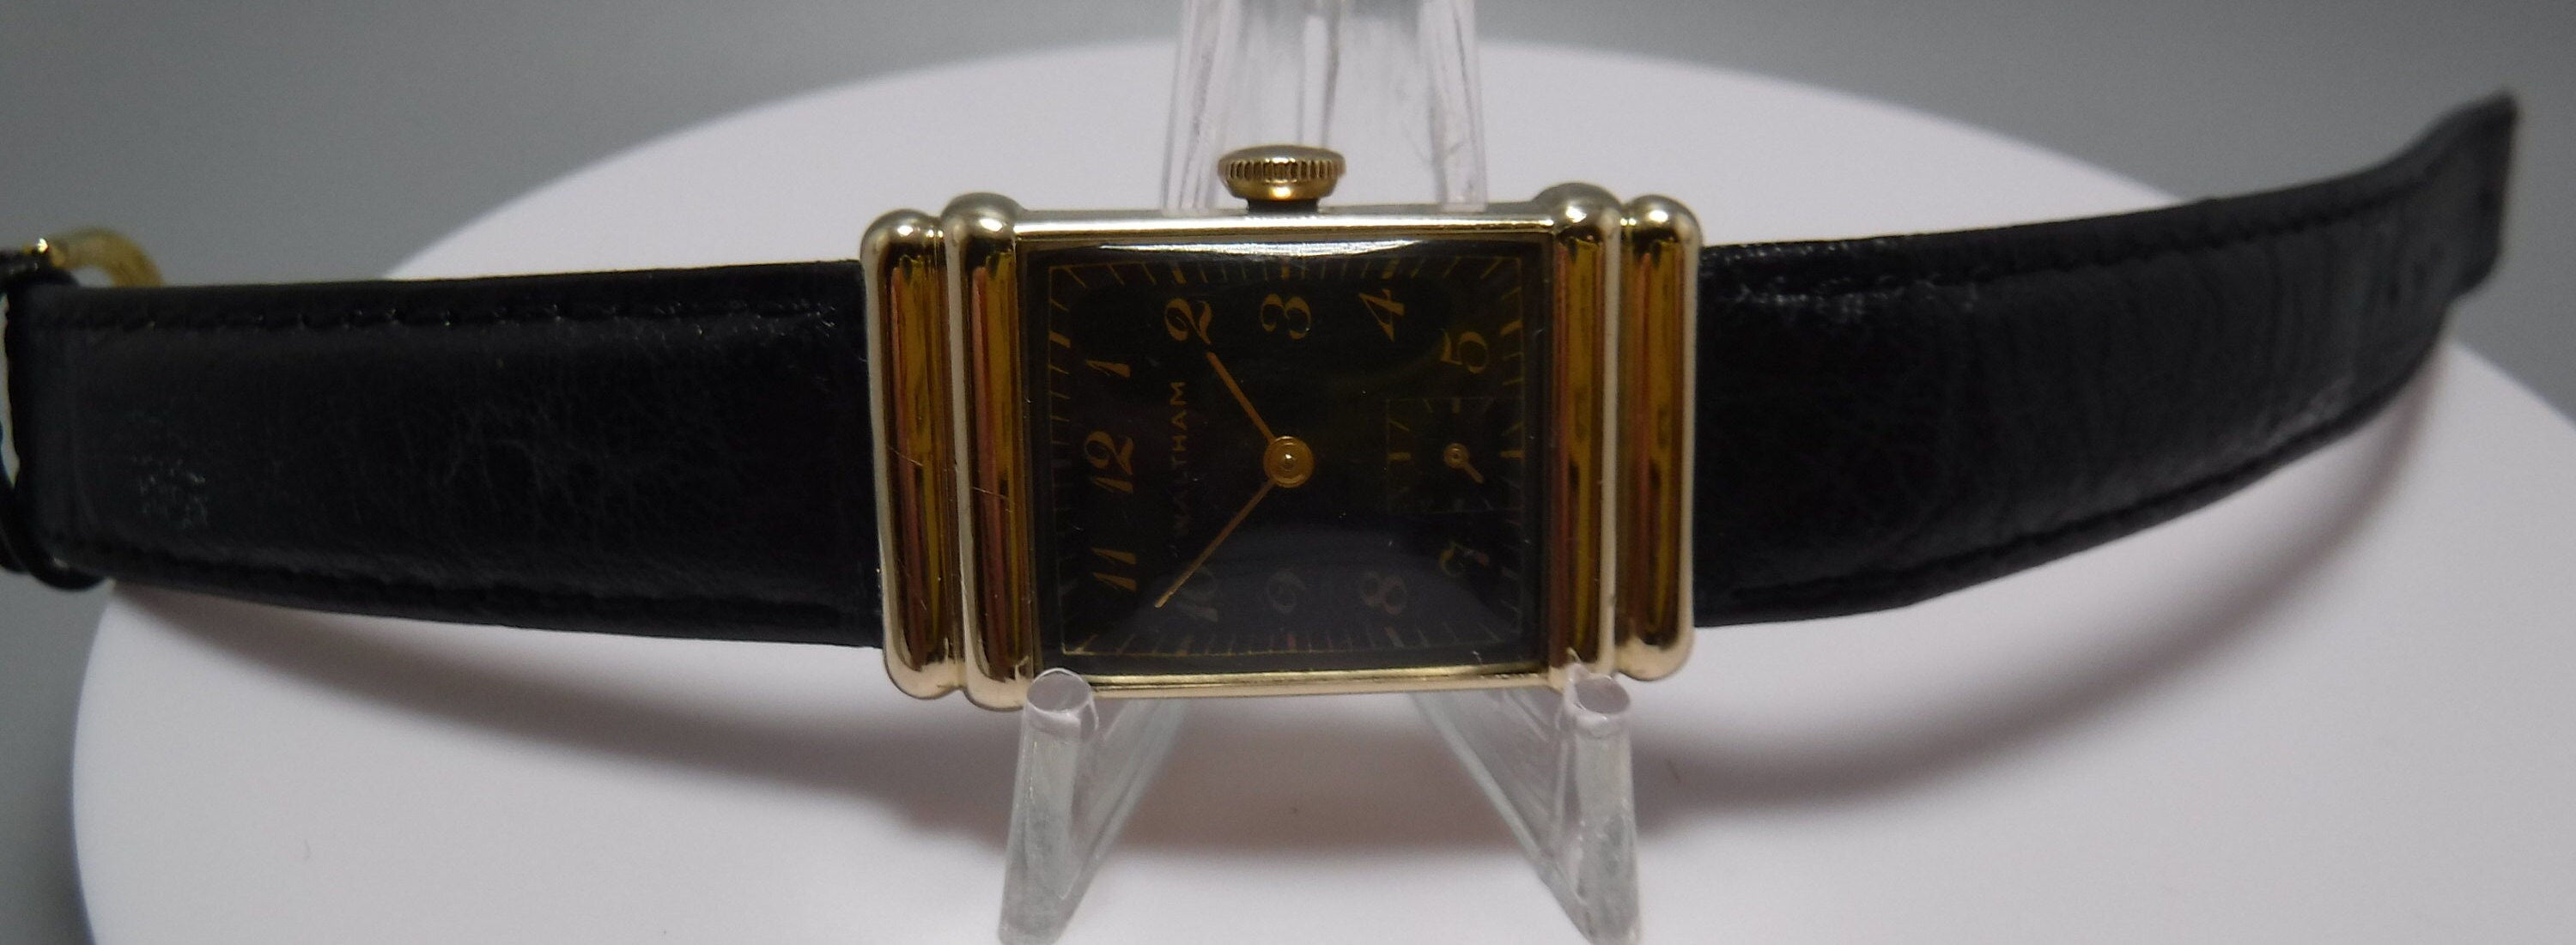 Waltham 1950's Black Dial 17 Jewel Wristwatch